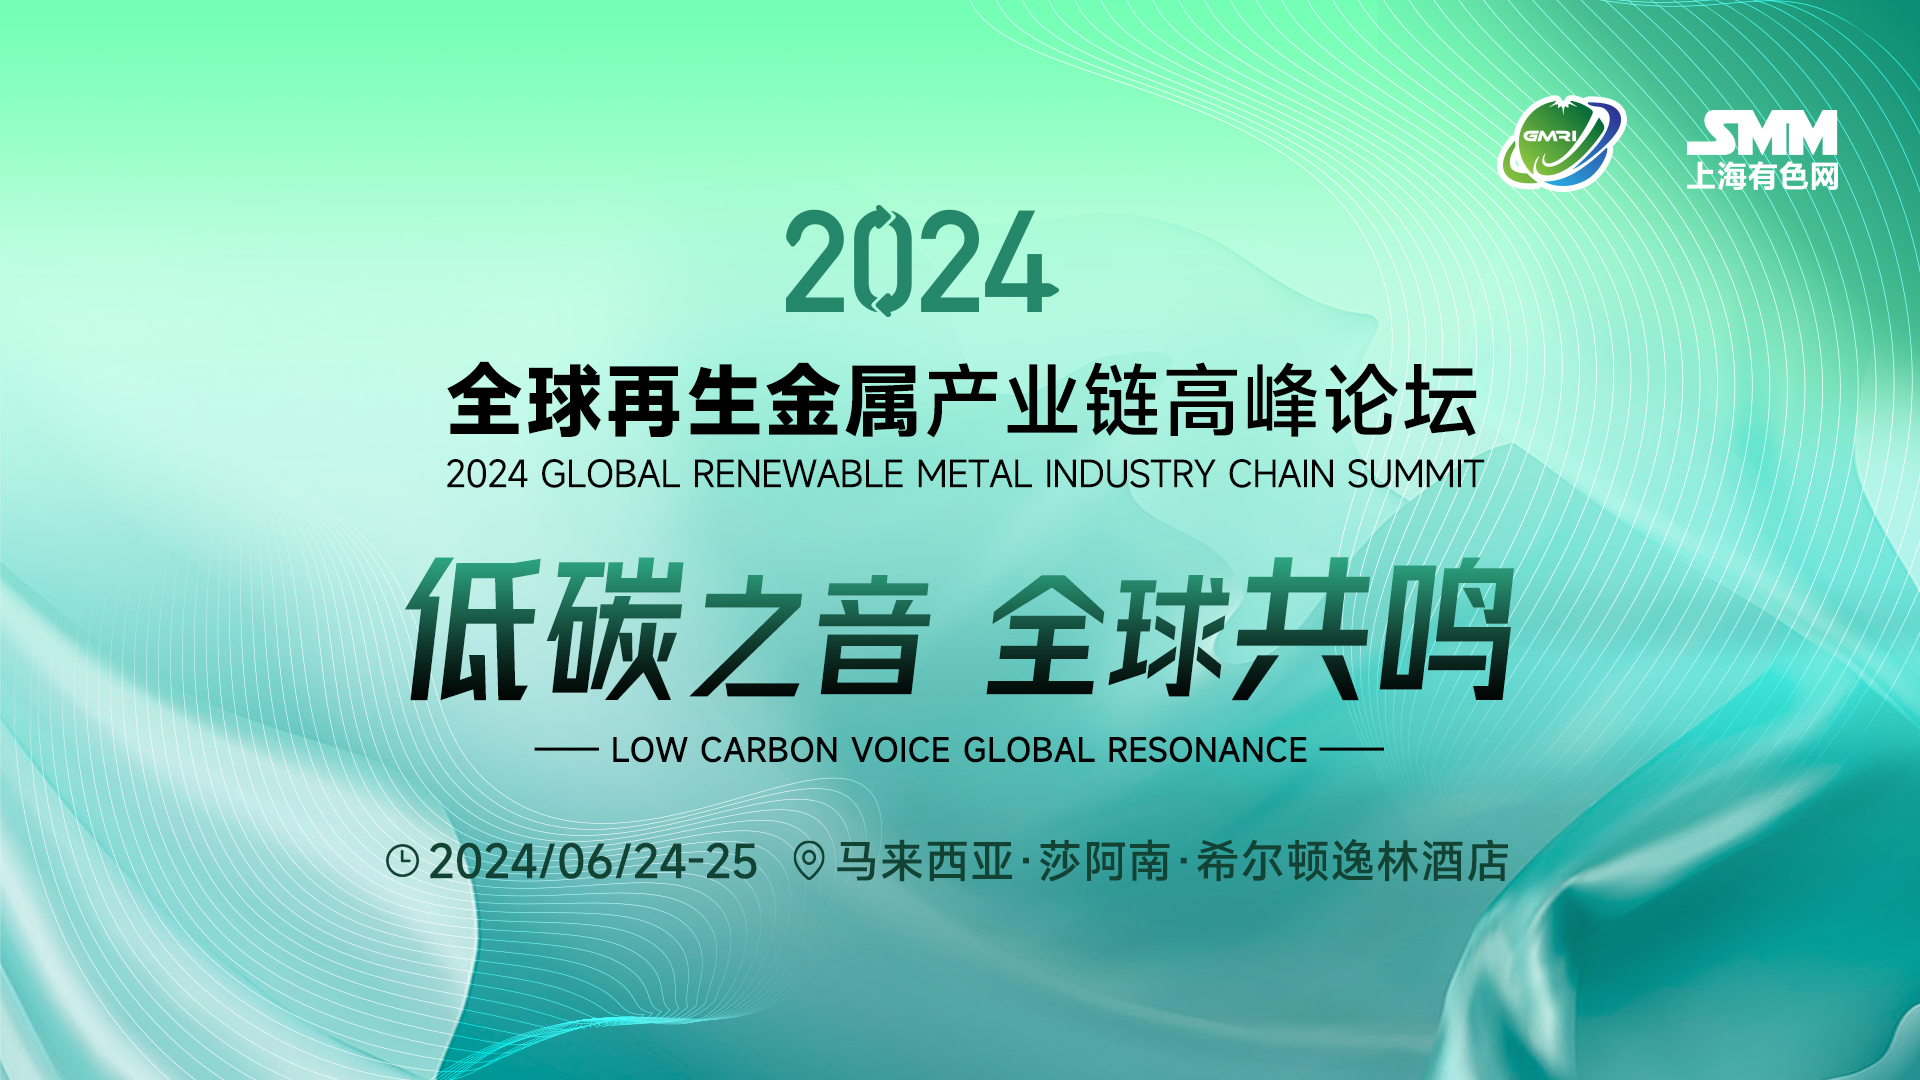 【SMM：中国锑铋铟镓行业产品市场发展潜力】SMM小金属产业分析师黄迪对中国锑铋铟镓行业产品市场发展潜力进行了分析。SMM预计2025年焦锑酸钠用金属锑将达到4万吨以上，至2029年焦锑酸钠用金属锑将达到6万吨以上，需求将占到全国锑金属产量的90%以上。在未来的几年内，液态金属电池领域将是拉大锑金属供应缺口的主要因素。中国镓目前总产能大于800吨，2024年预计还有超200吨新增产能。
